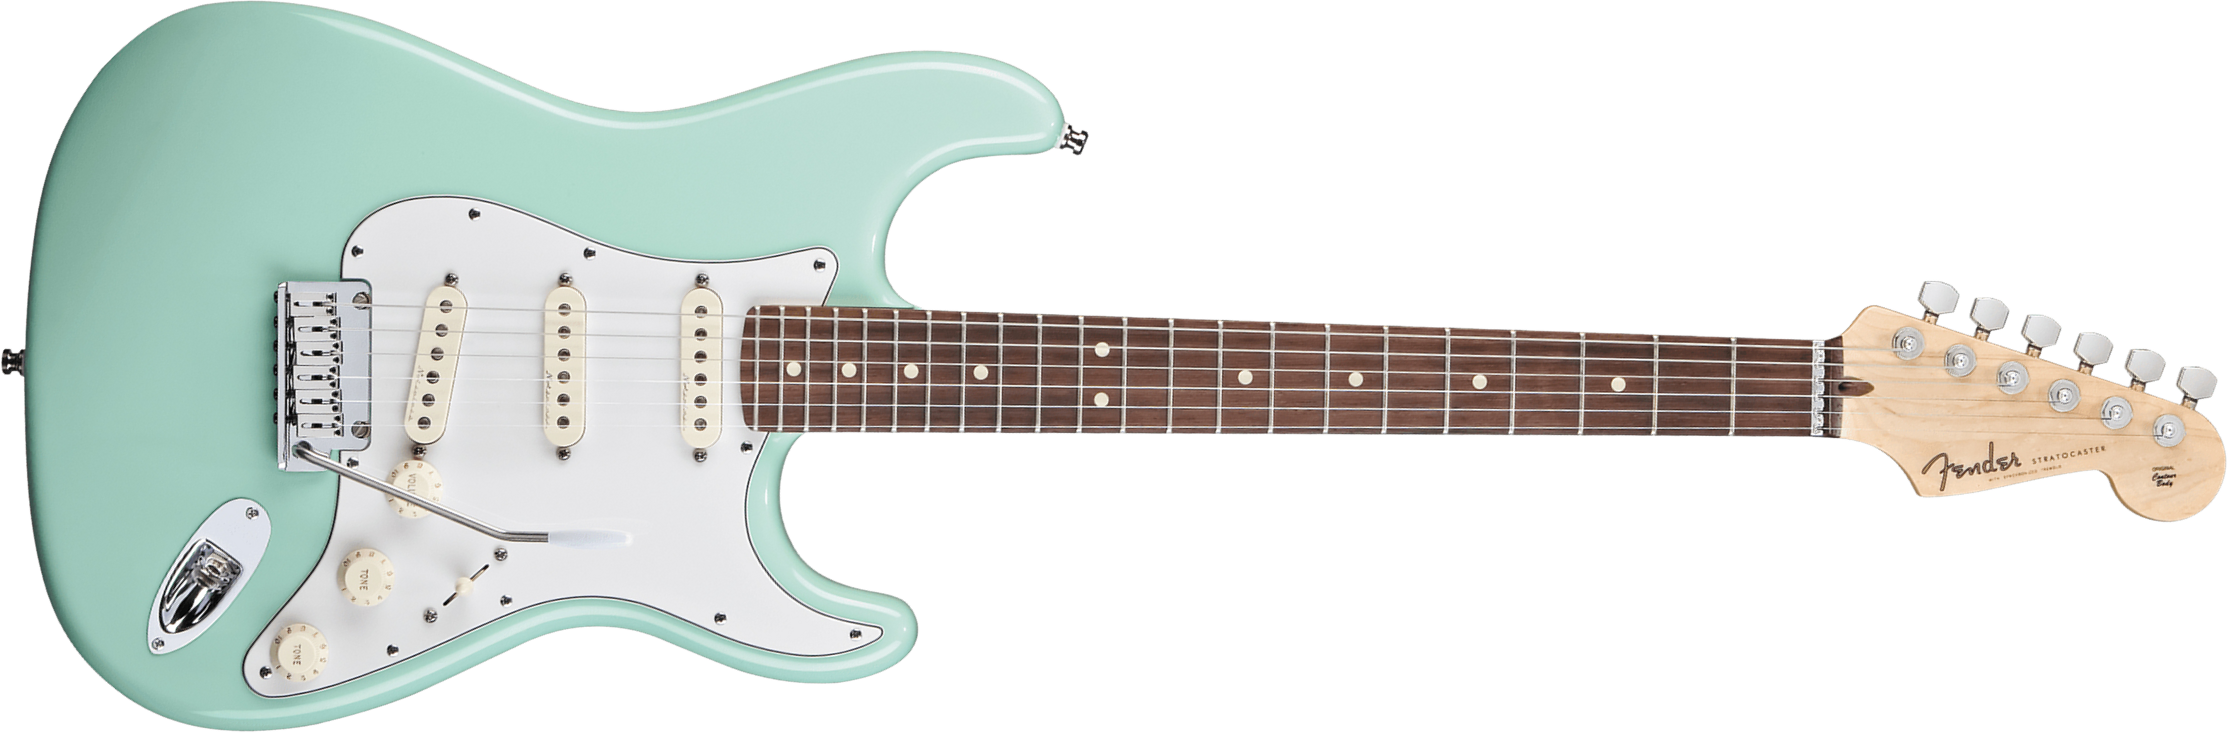 Fender Custom Shop Jeff Beck Strat 3s Trem Rw - Nos Surf Green - Elektrische gitaar in Str-vorm - Main picture